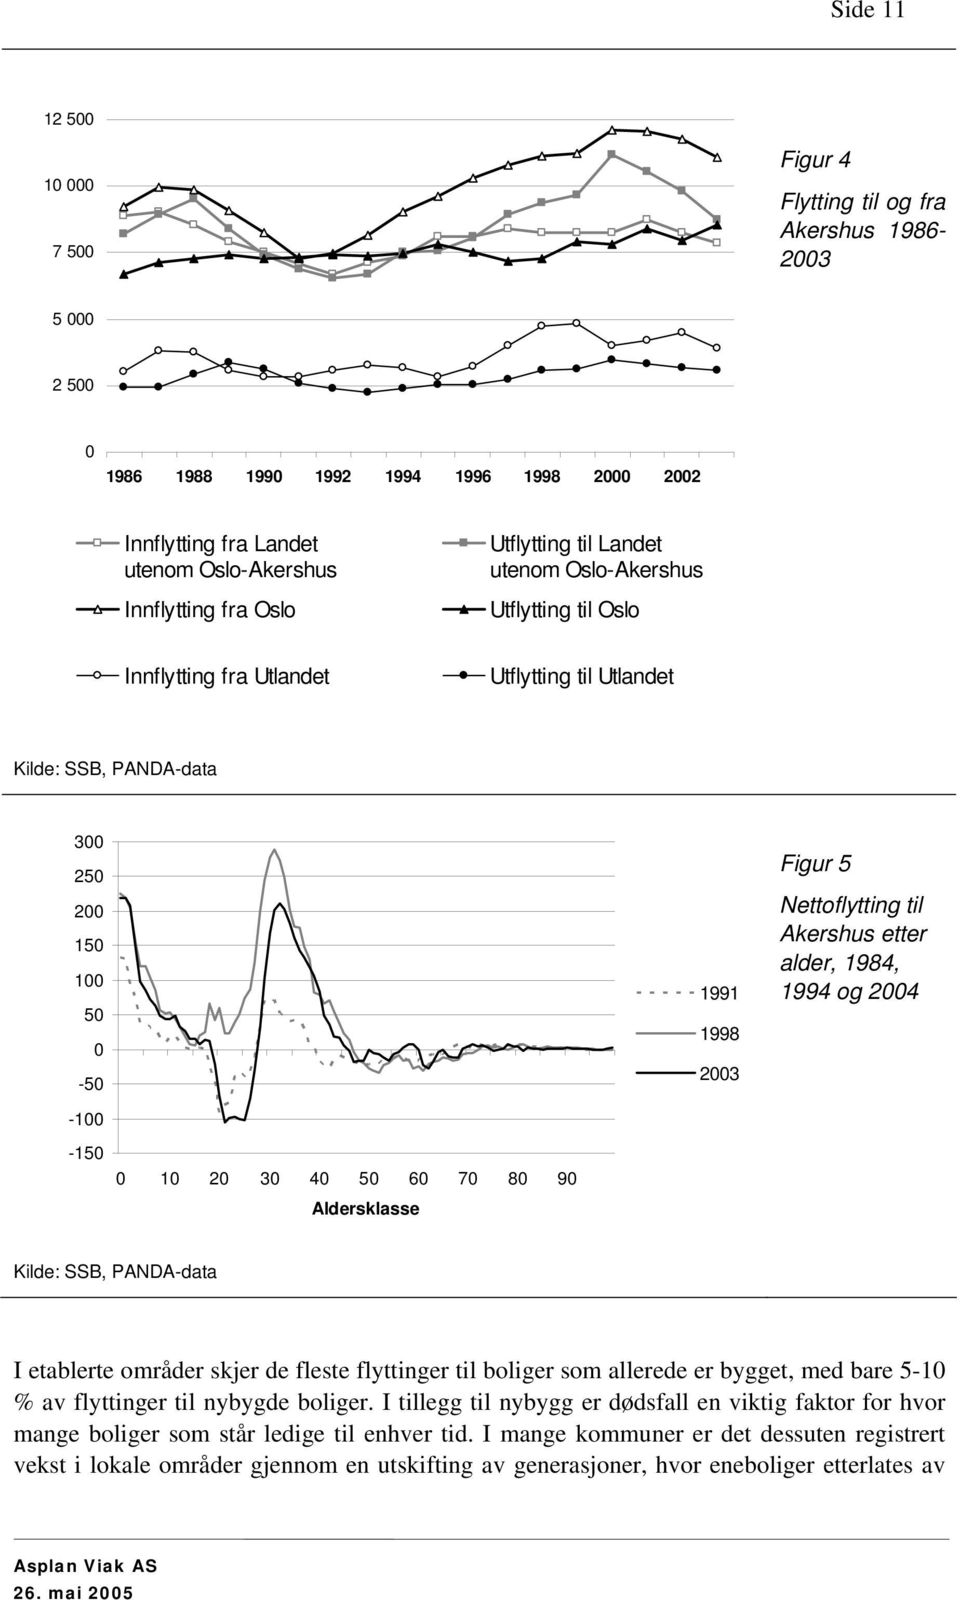 Nettoflytting til Akershus etter alder, 1984, 1994 og 2004-150 0 10 20 30 40 50 60 70 80 90 Aldersklasse Kilde: SSB, PANDA-data I etablerte områder skjer de fleste flyttinger til boliger som allerede